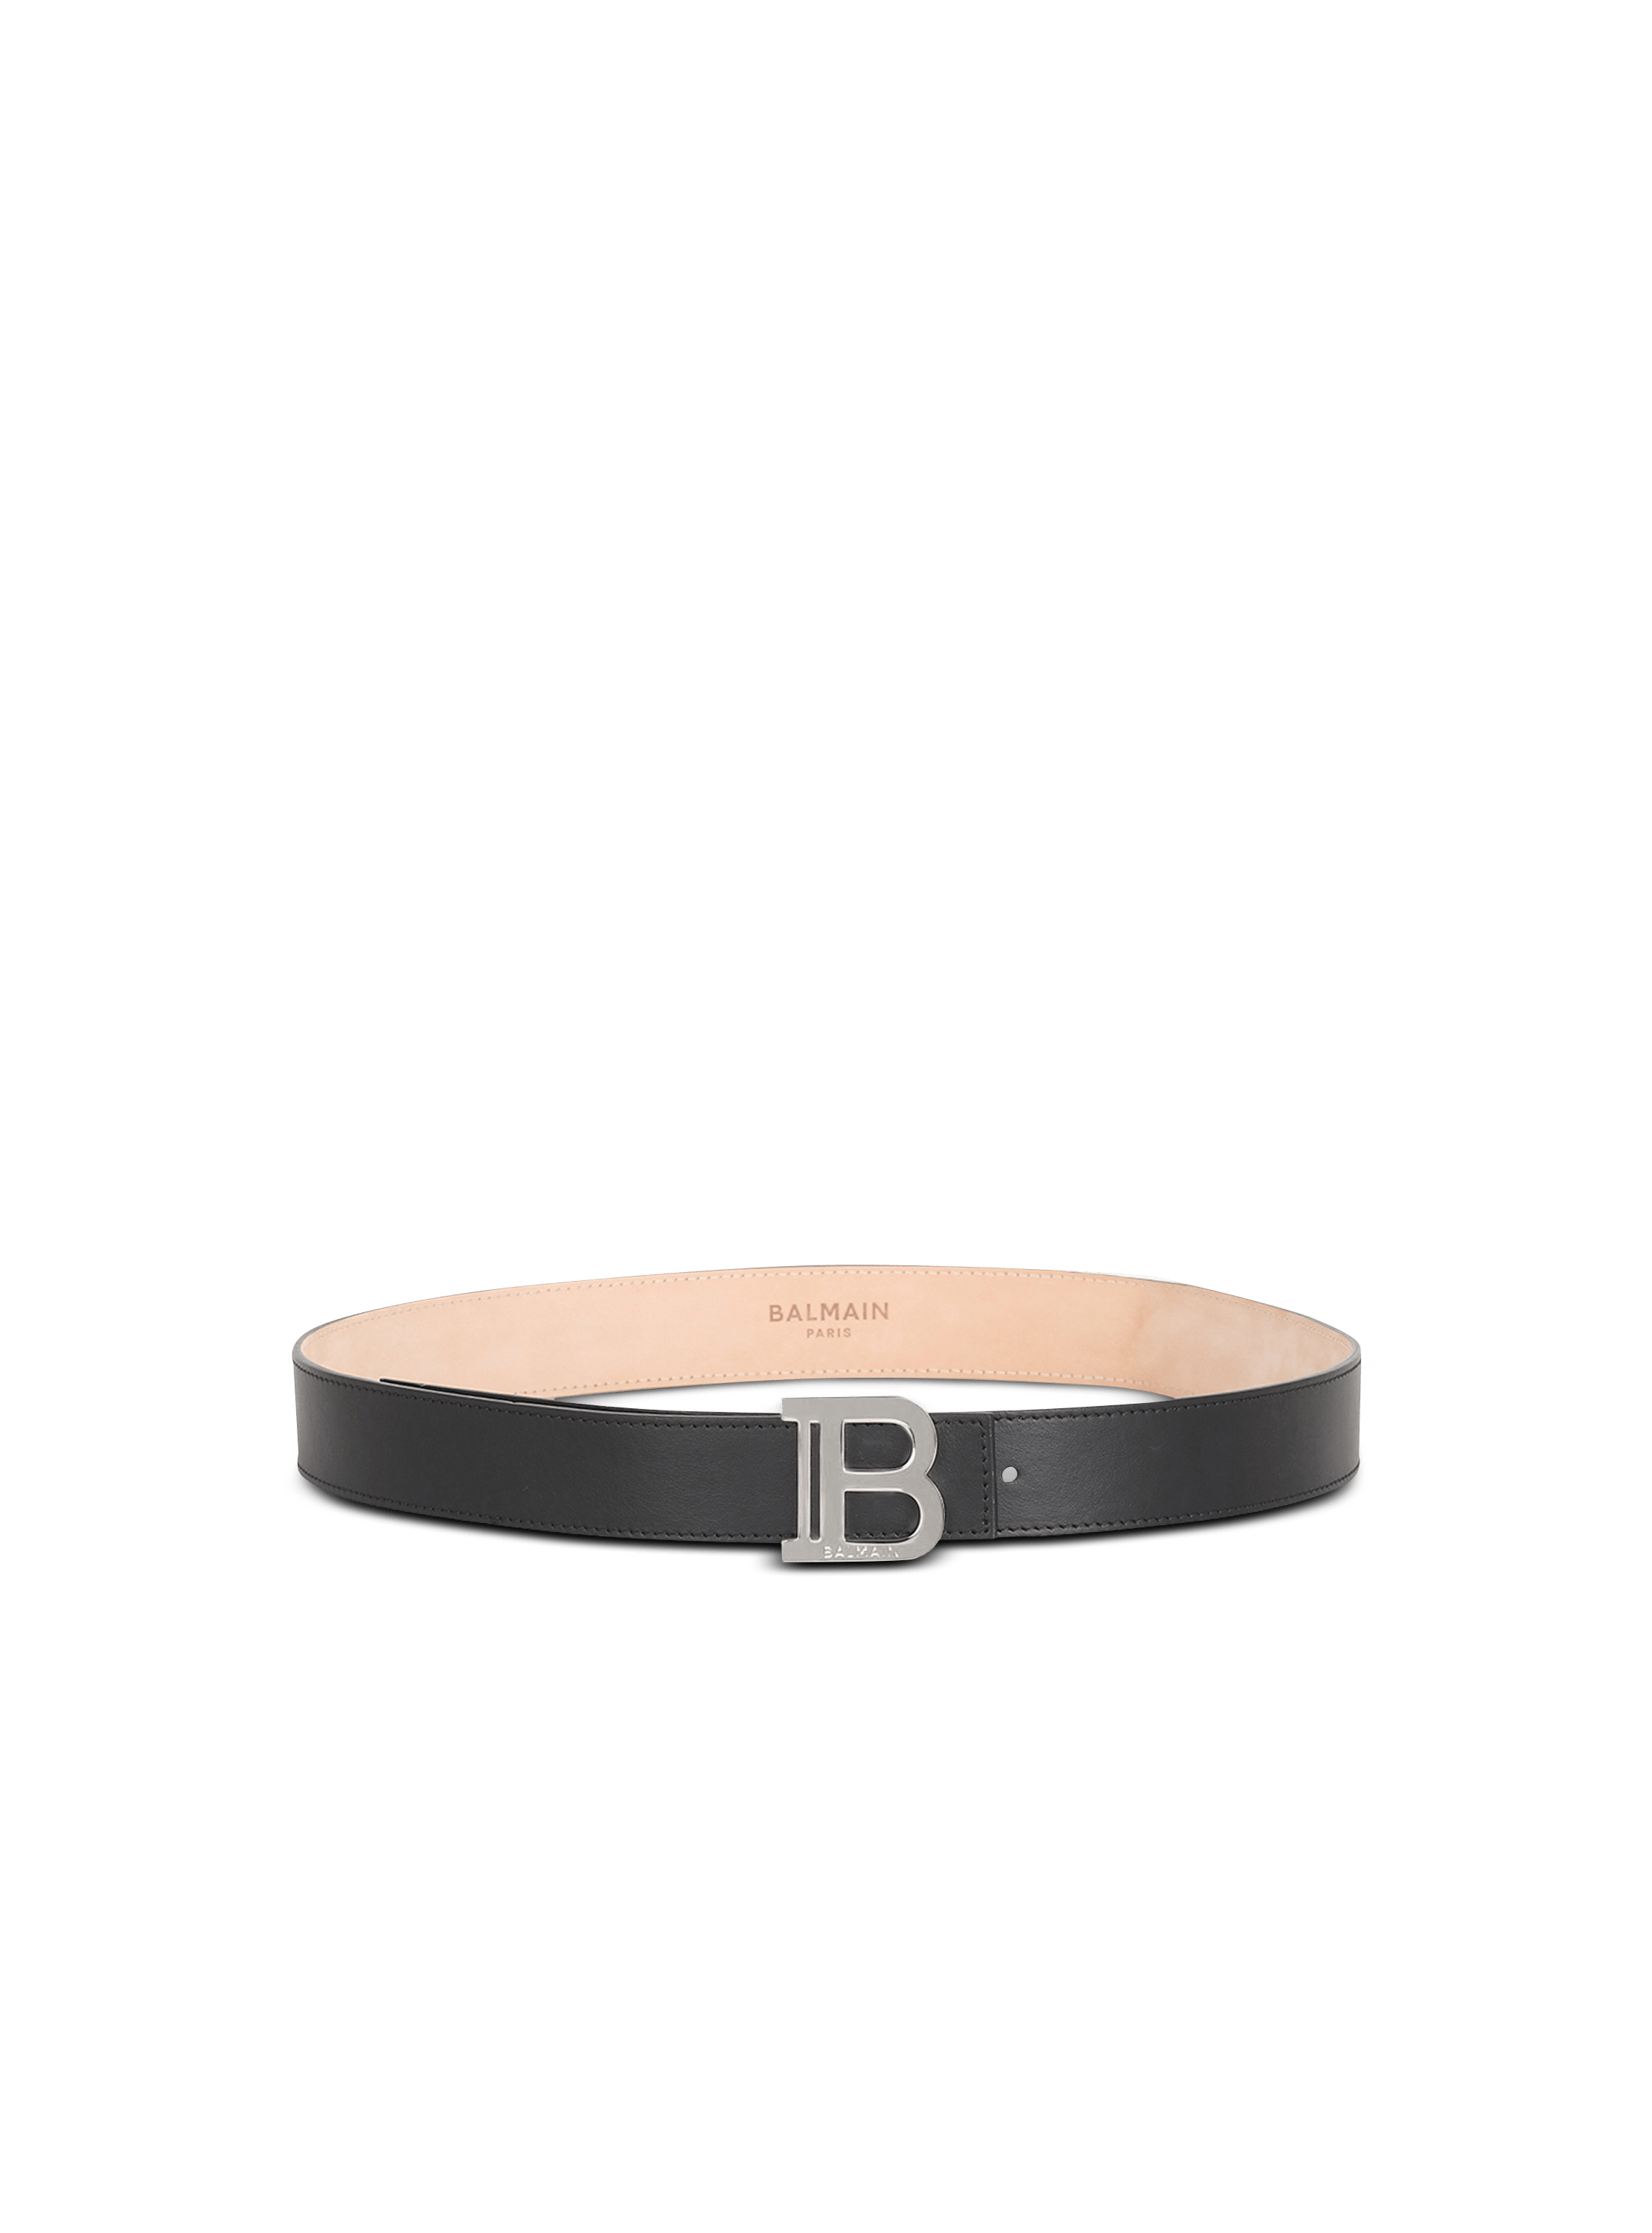 Balmain belt